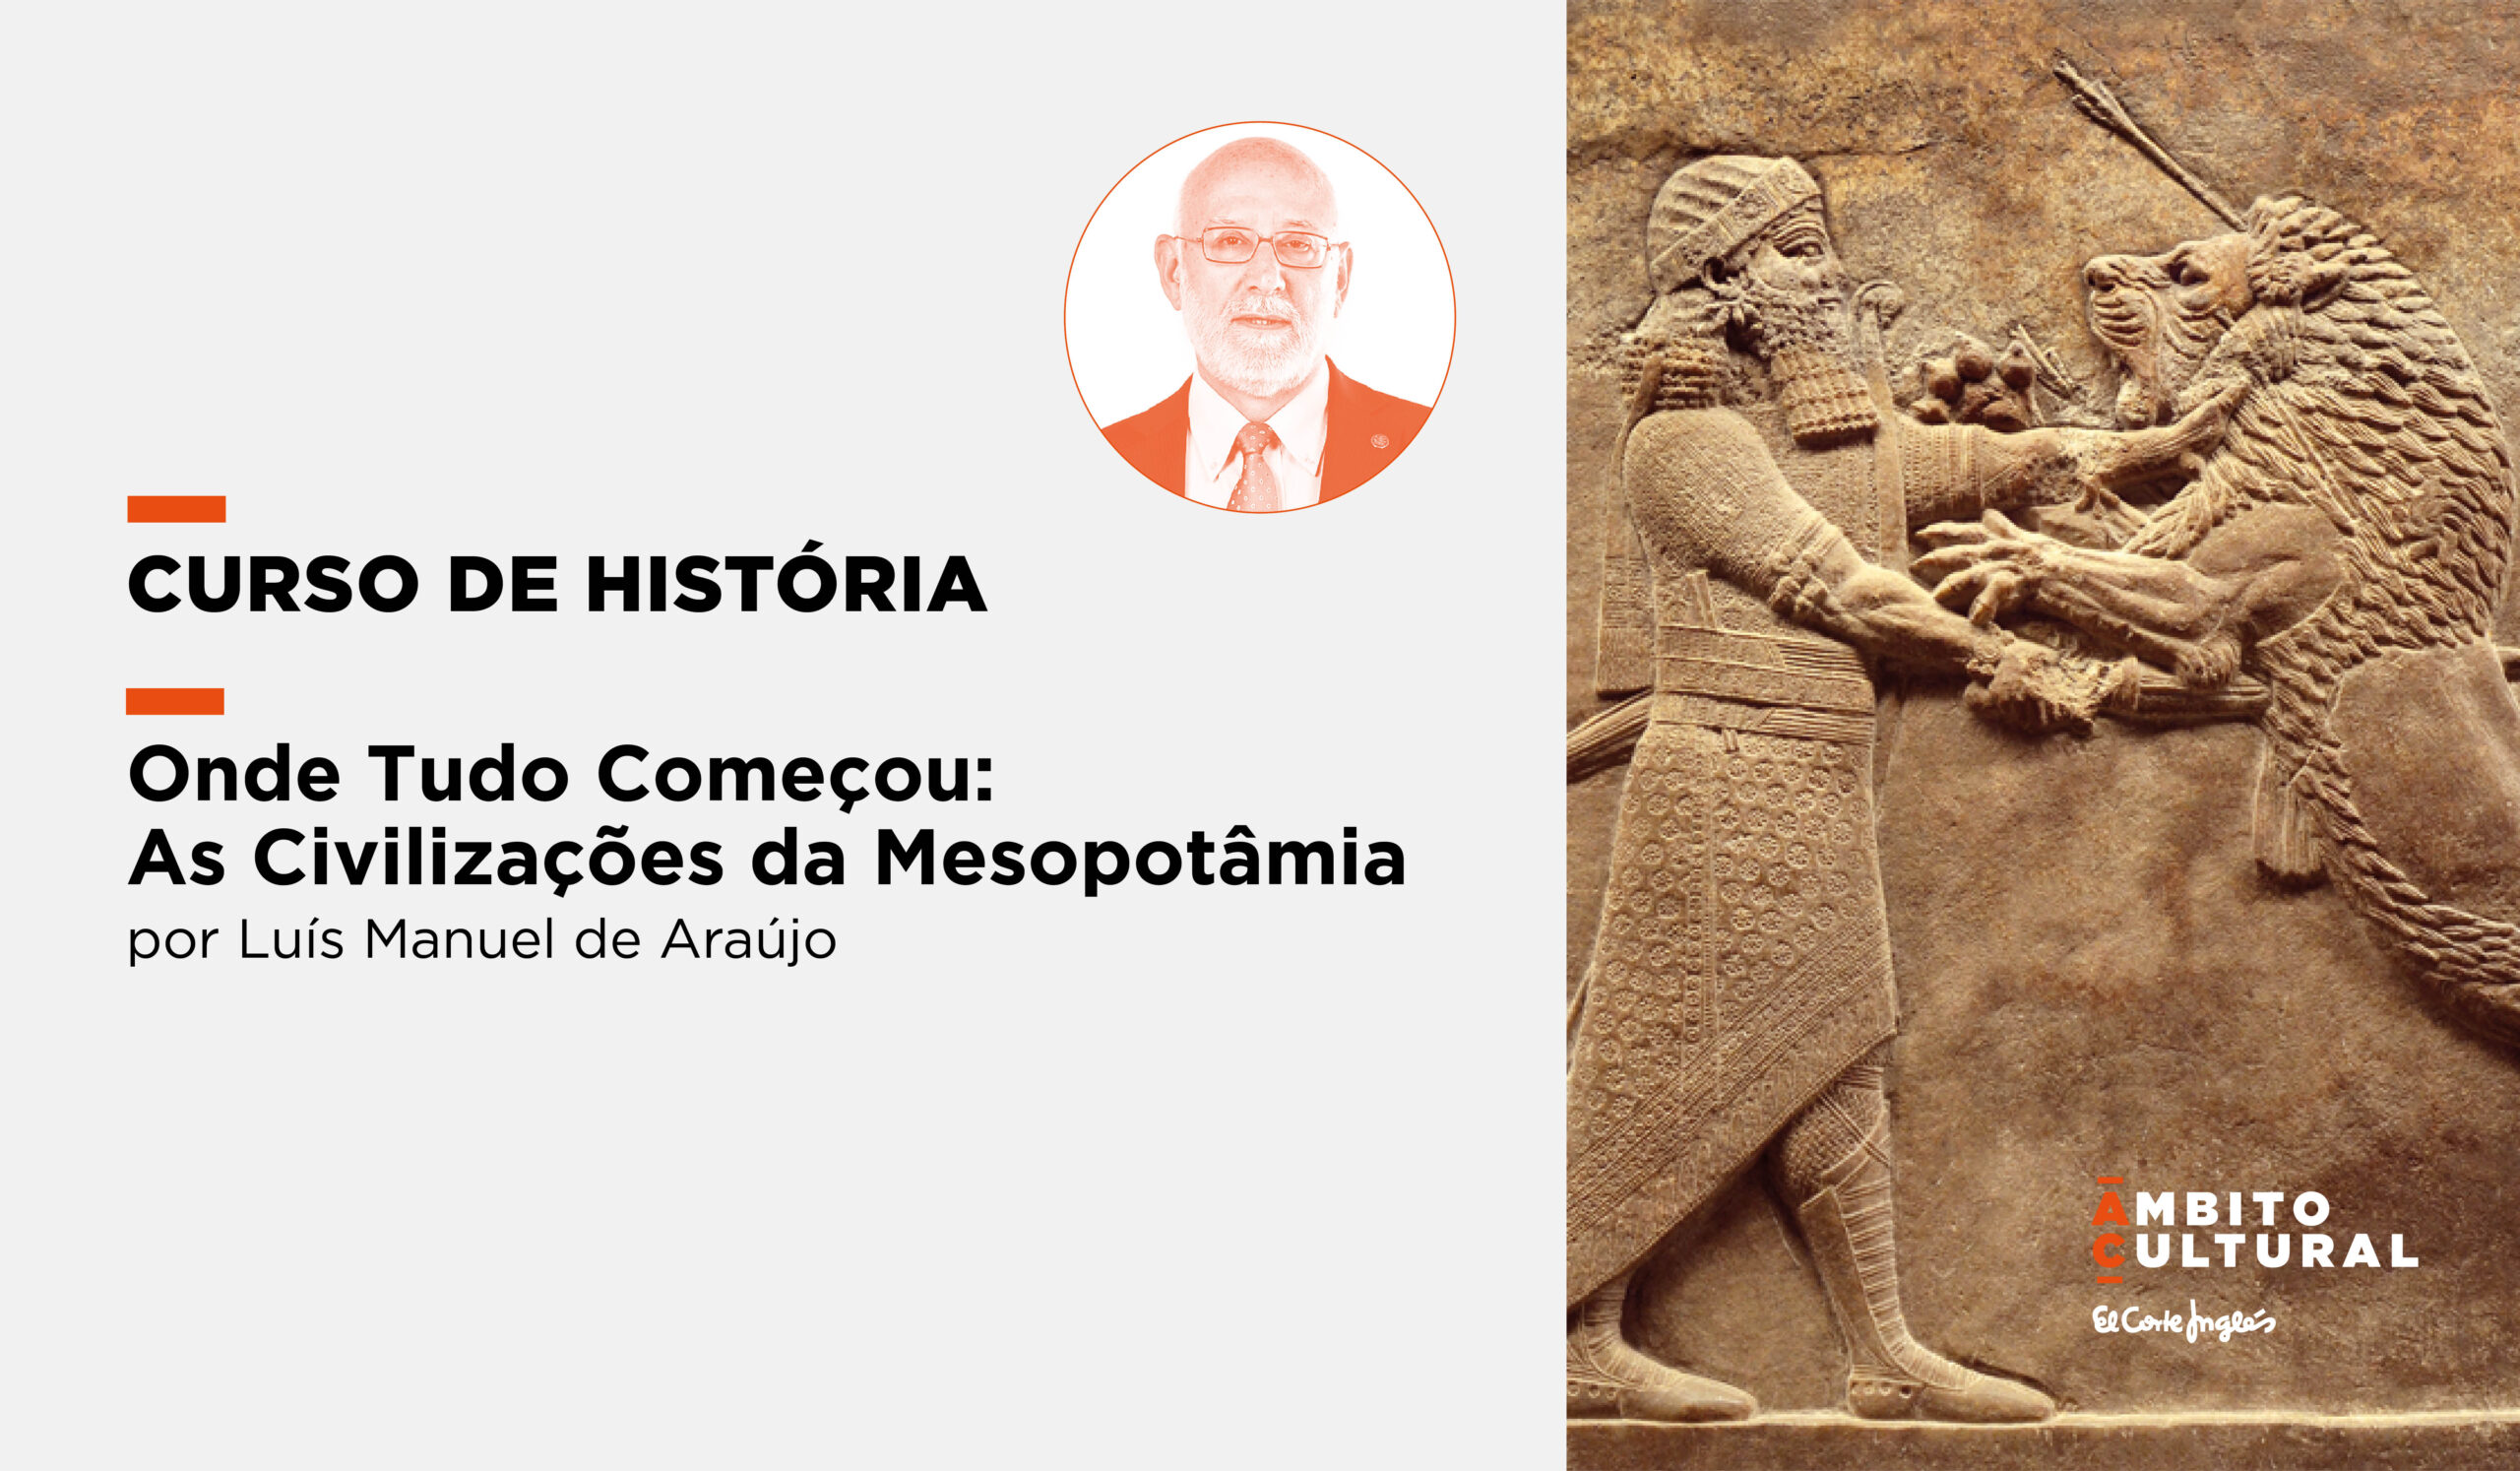 Curso “Onde Tudo Começou: As Civilizações da Mesopotâmia” por Luís Manuel de Araújo